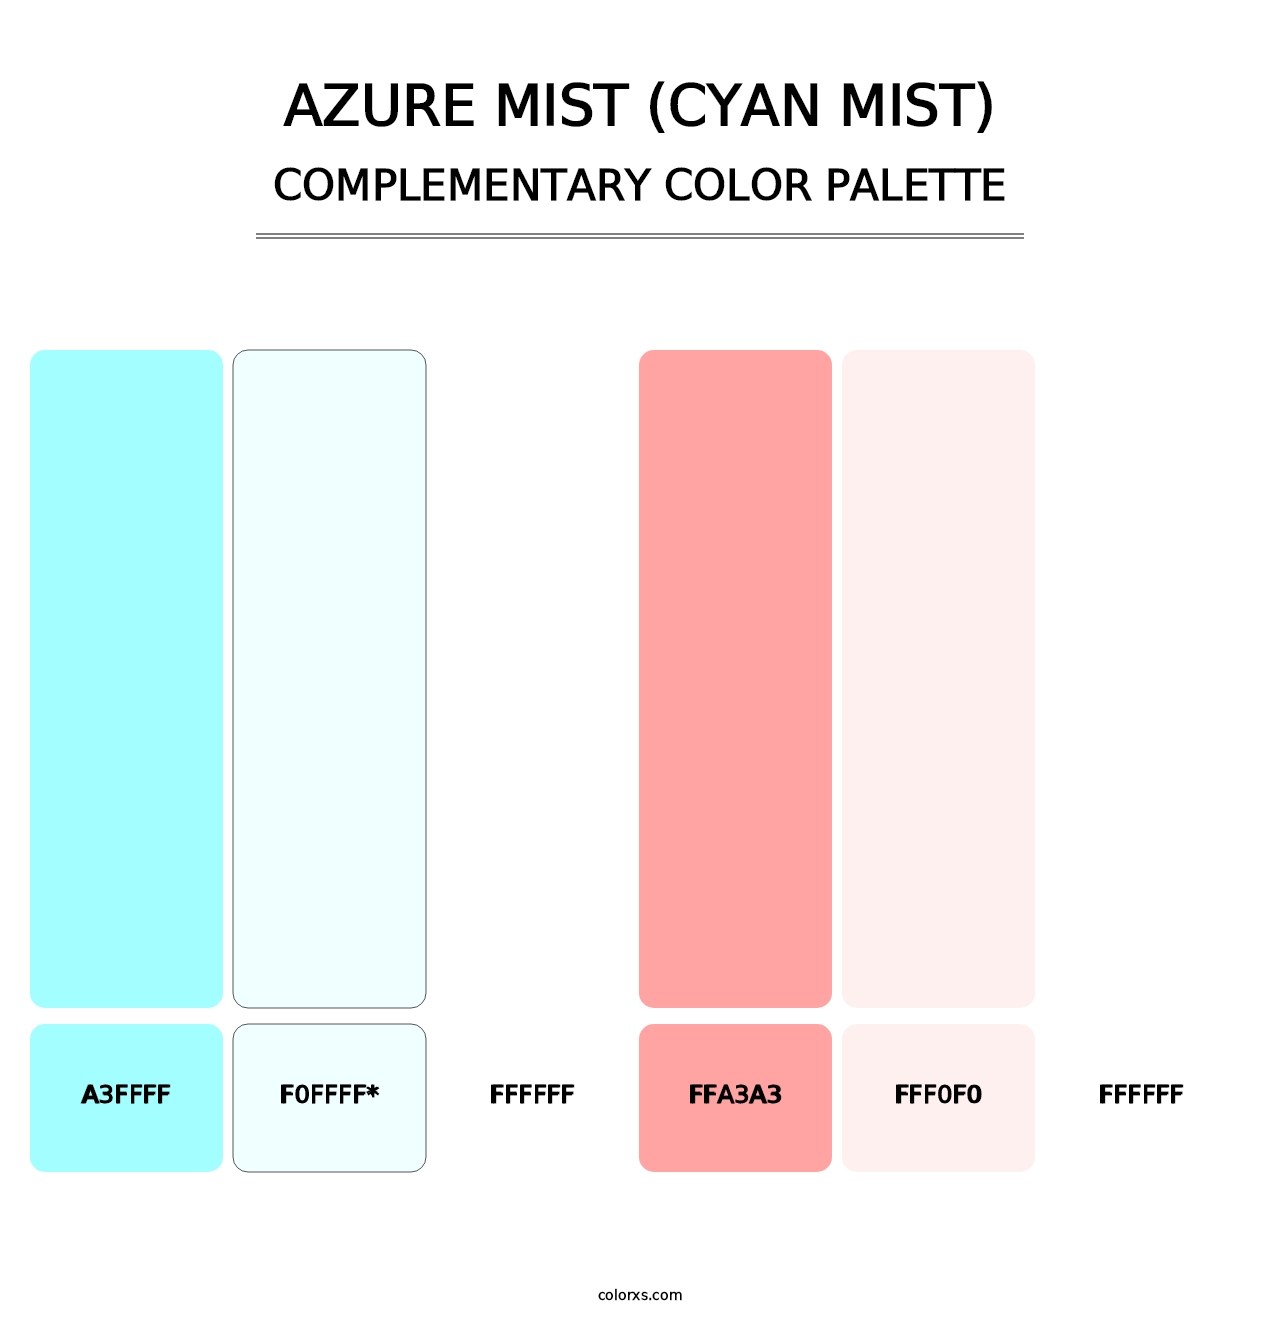 Azure Mist (Cyan Mist) - Complementary Color Palette